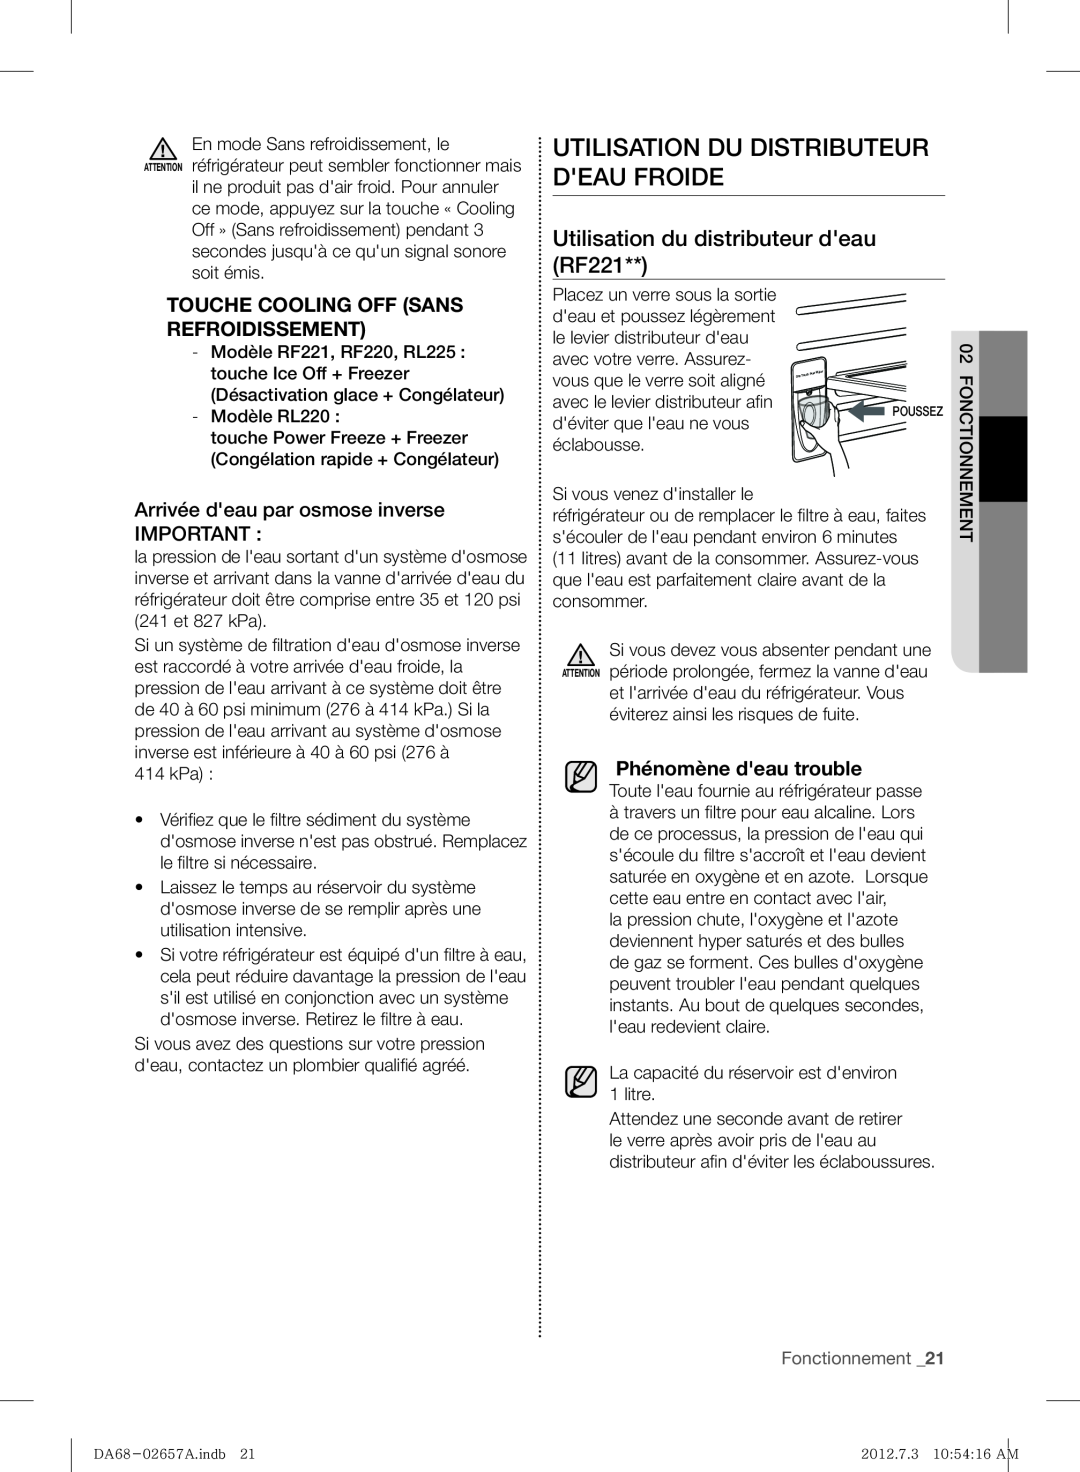 Samsung RF221NCTABC Utilisation Du Distributeur Deau Froide, Utilisation du distributeur deau RF221, Fonctionnement 